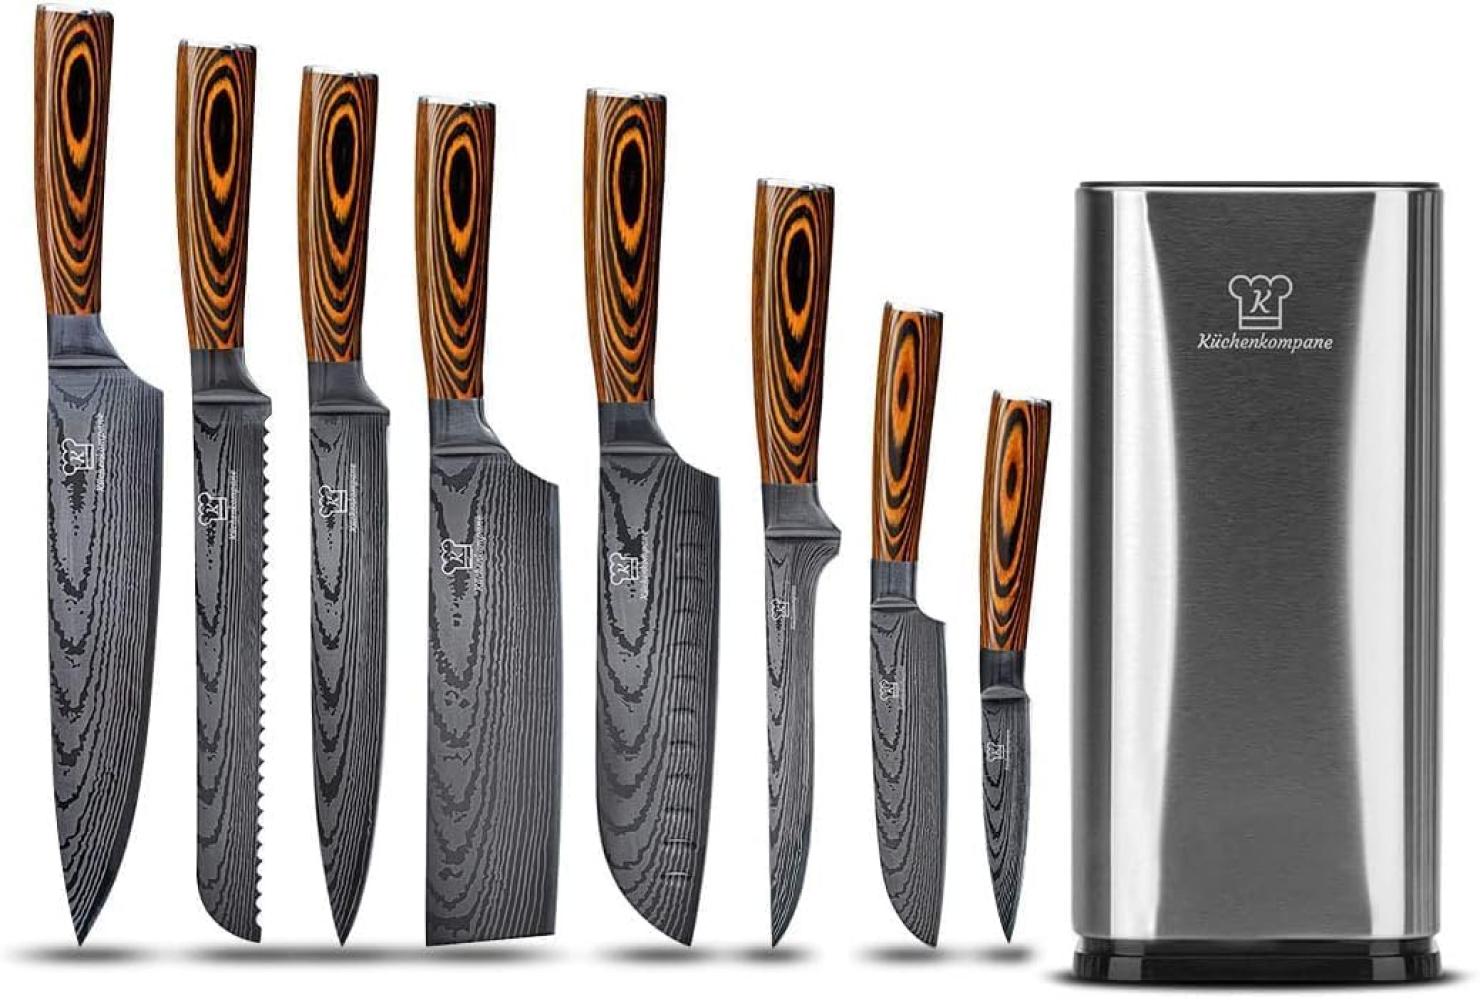 Messerset asiatisch mit magnetischer Holzleiste - Kuro Küchenmesser - 8-teiliges Messerset mit handgeschmiedeten Edelstahlklingen und Pakkaholz Griff - Rostfrei & scharf Bild 1